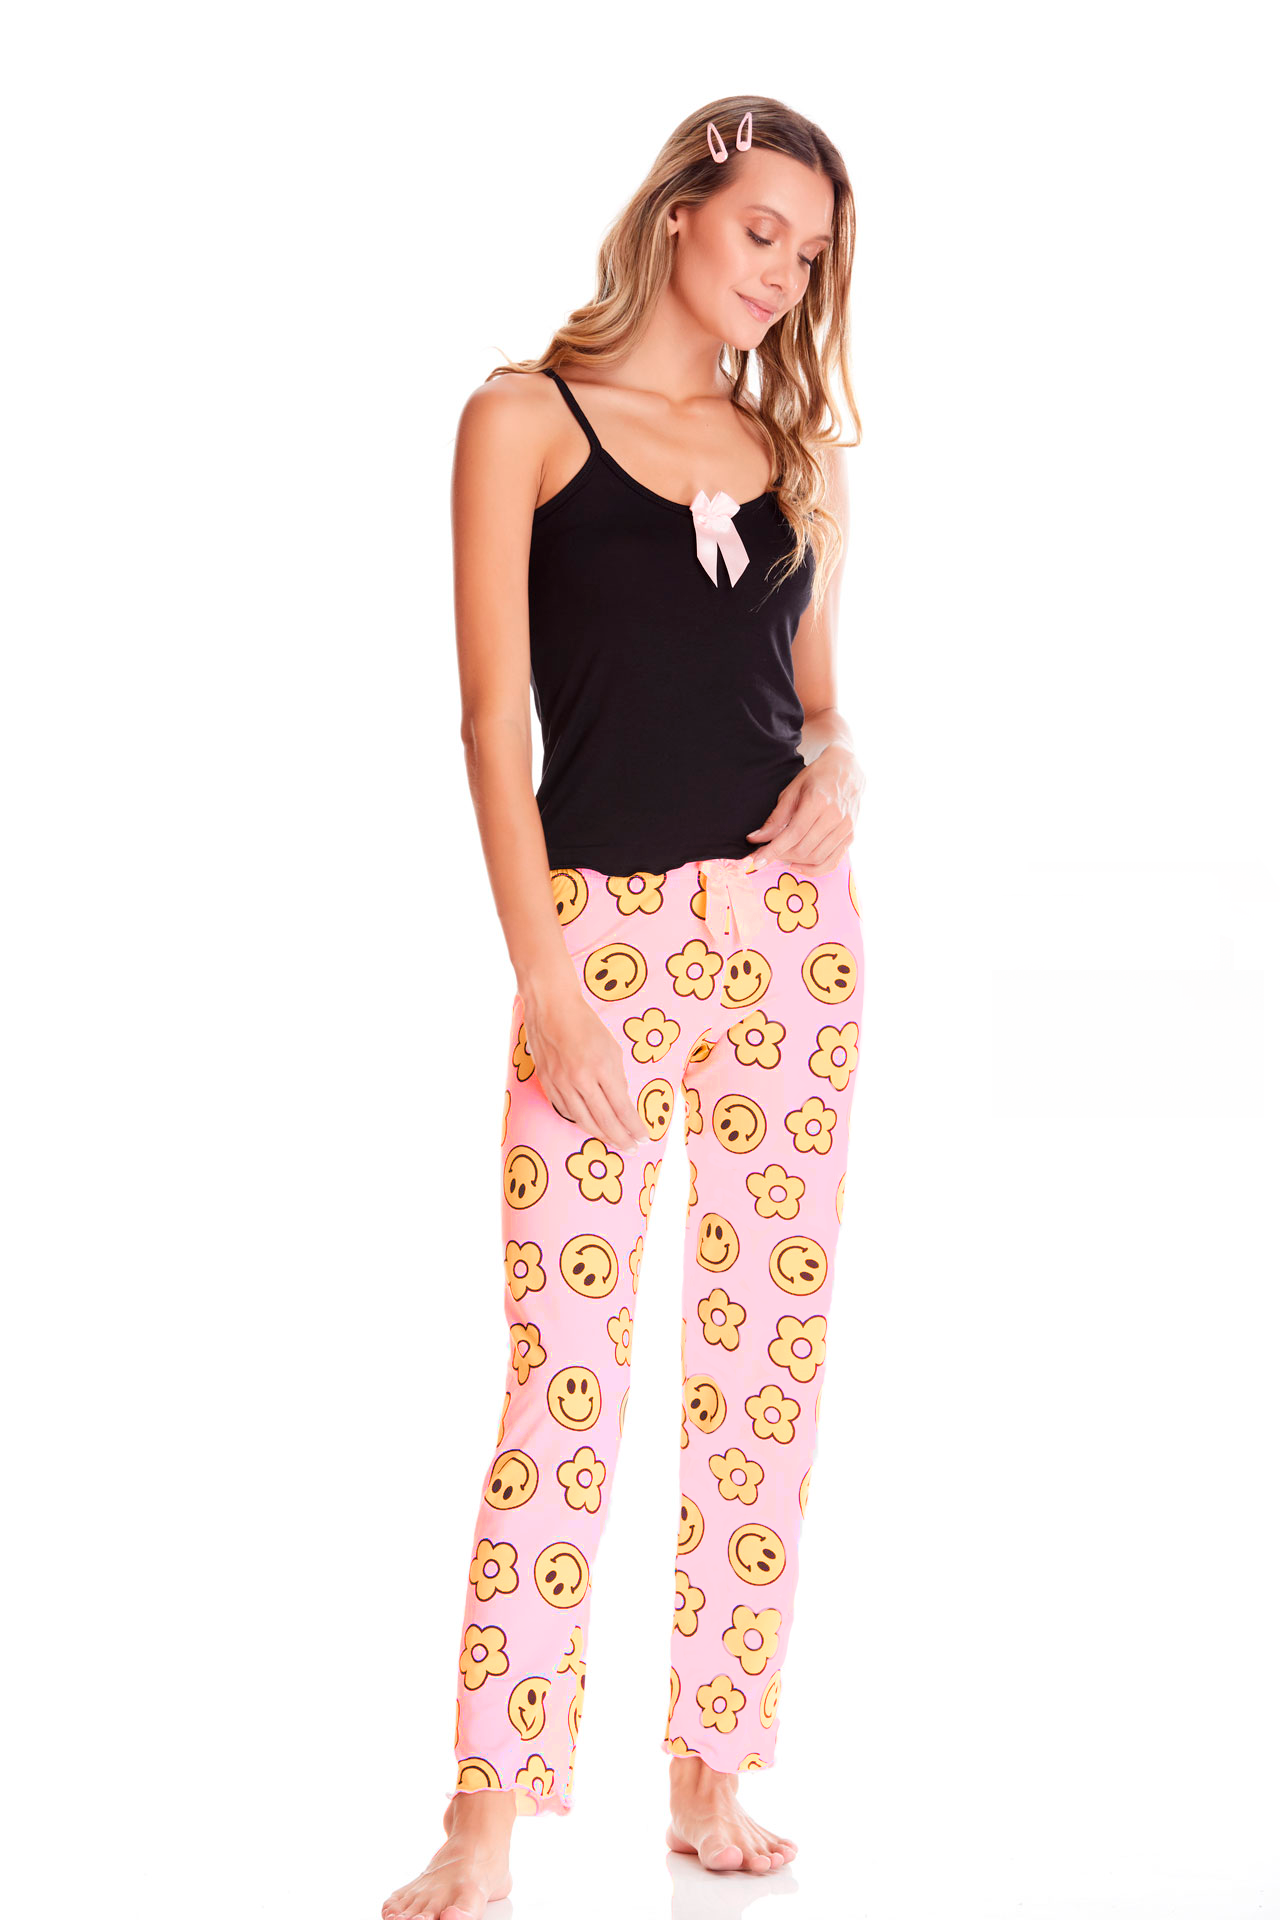 Imagen del producto: Conjunto pantalón rosado caritas amarillas y flores camisa negra